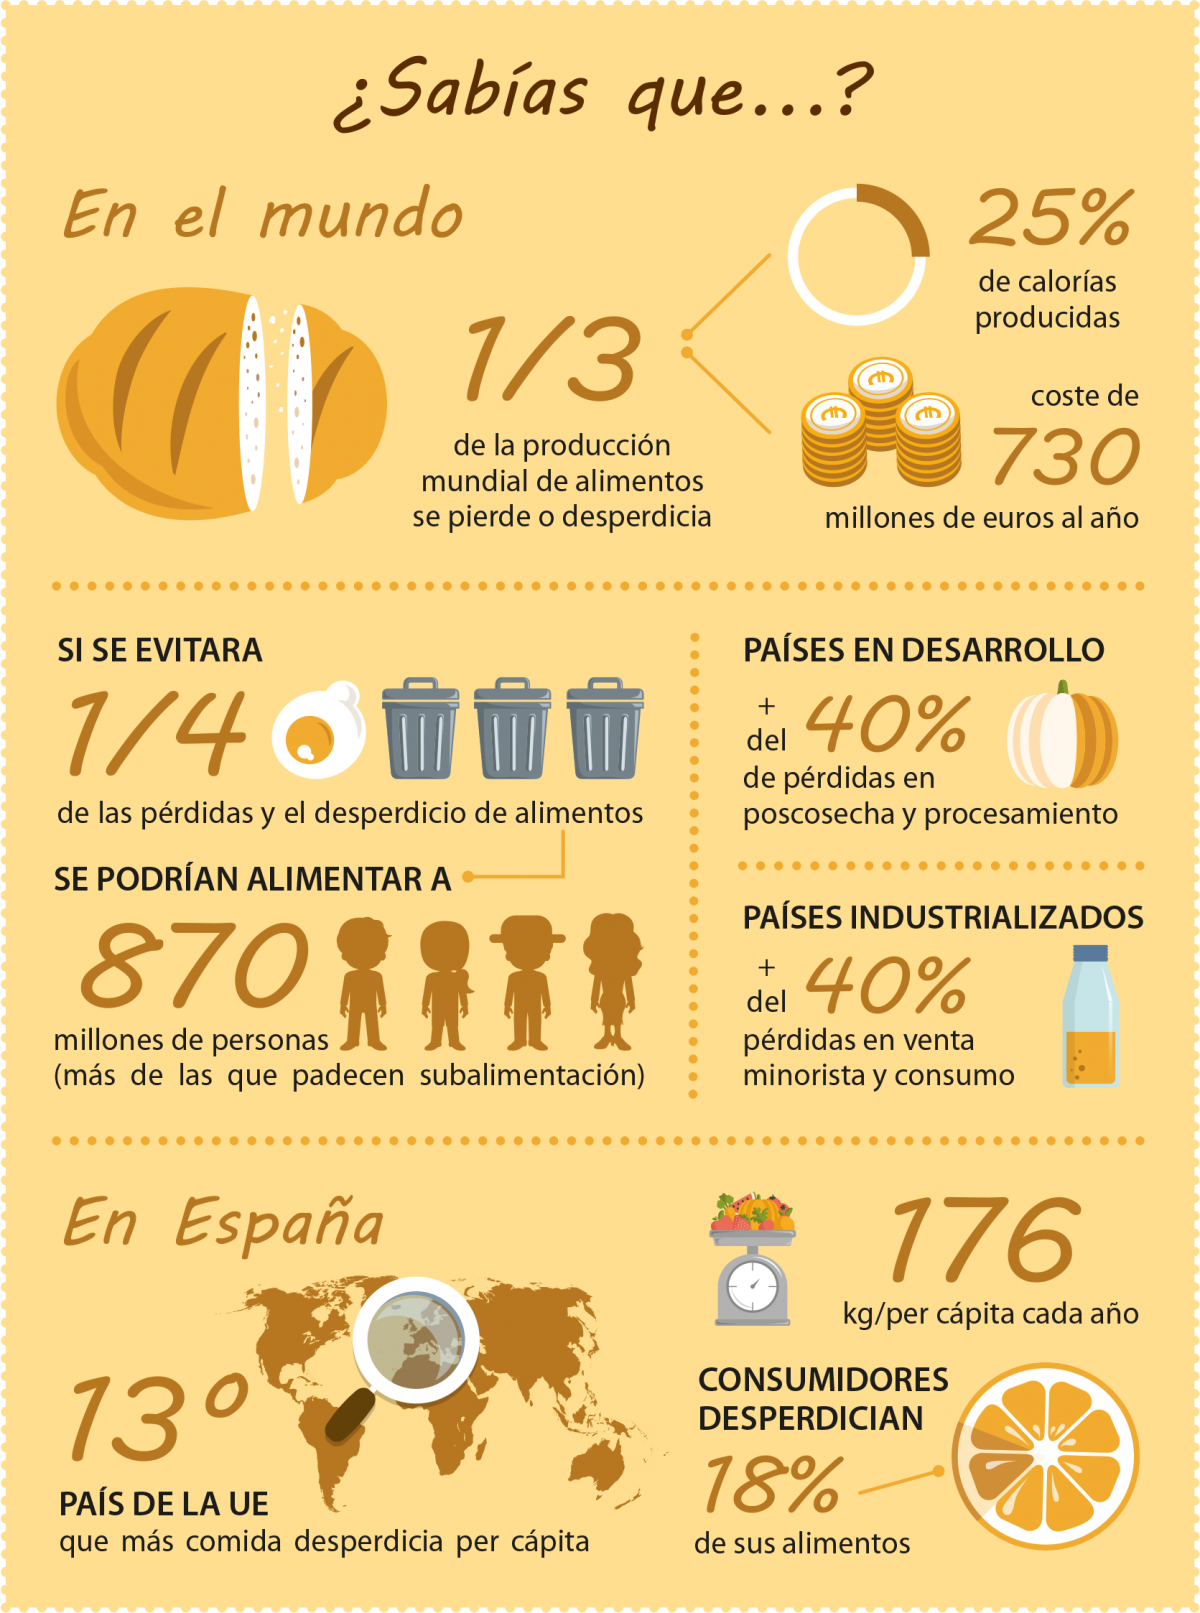 Infografía sobre el desperdicio de alimentos